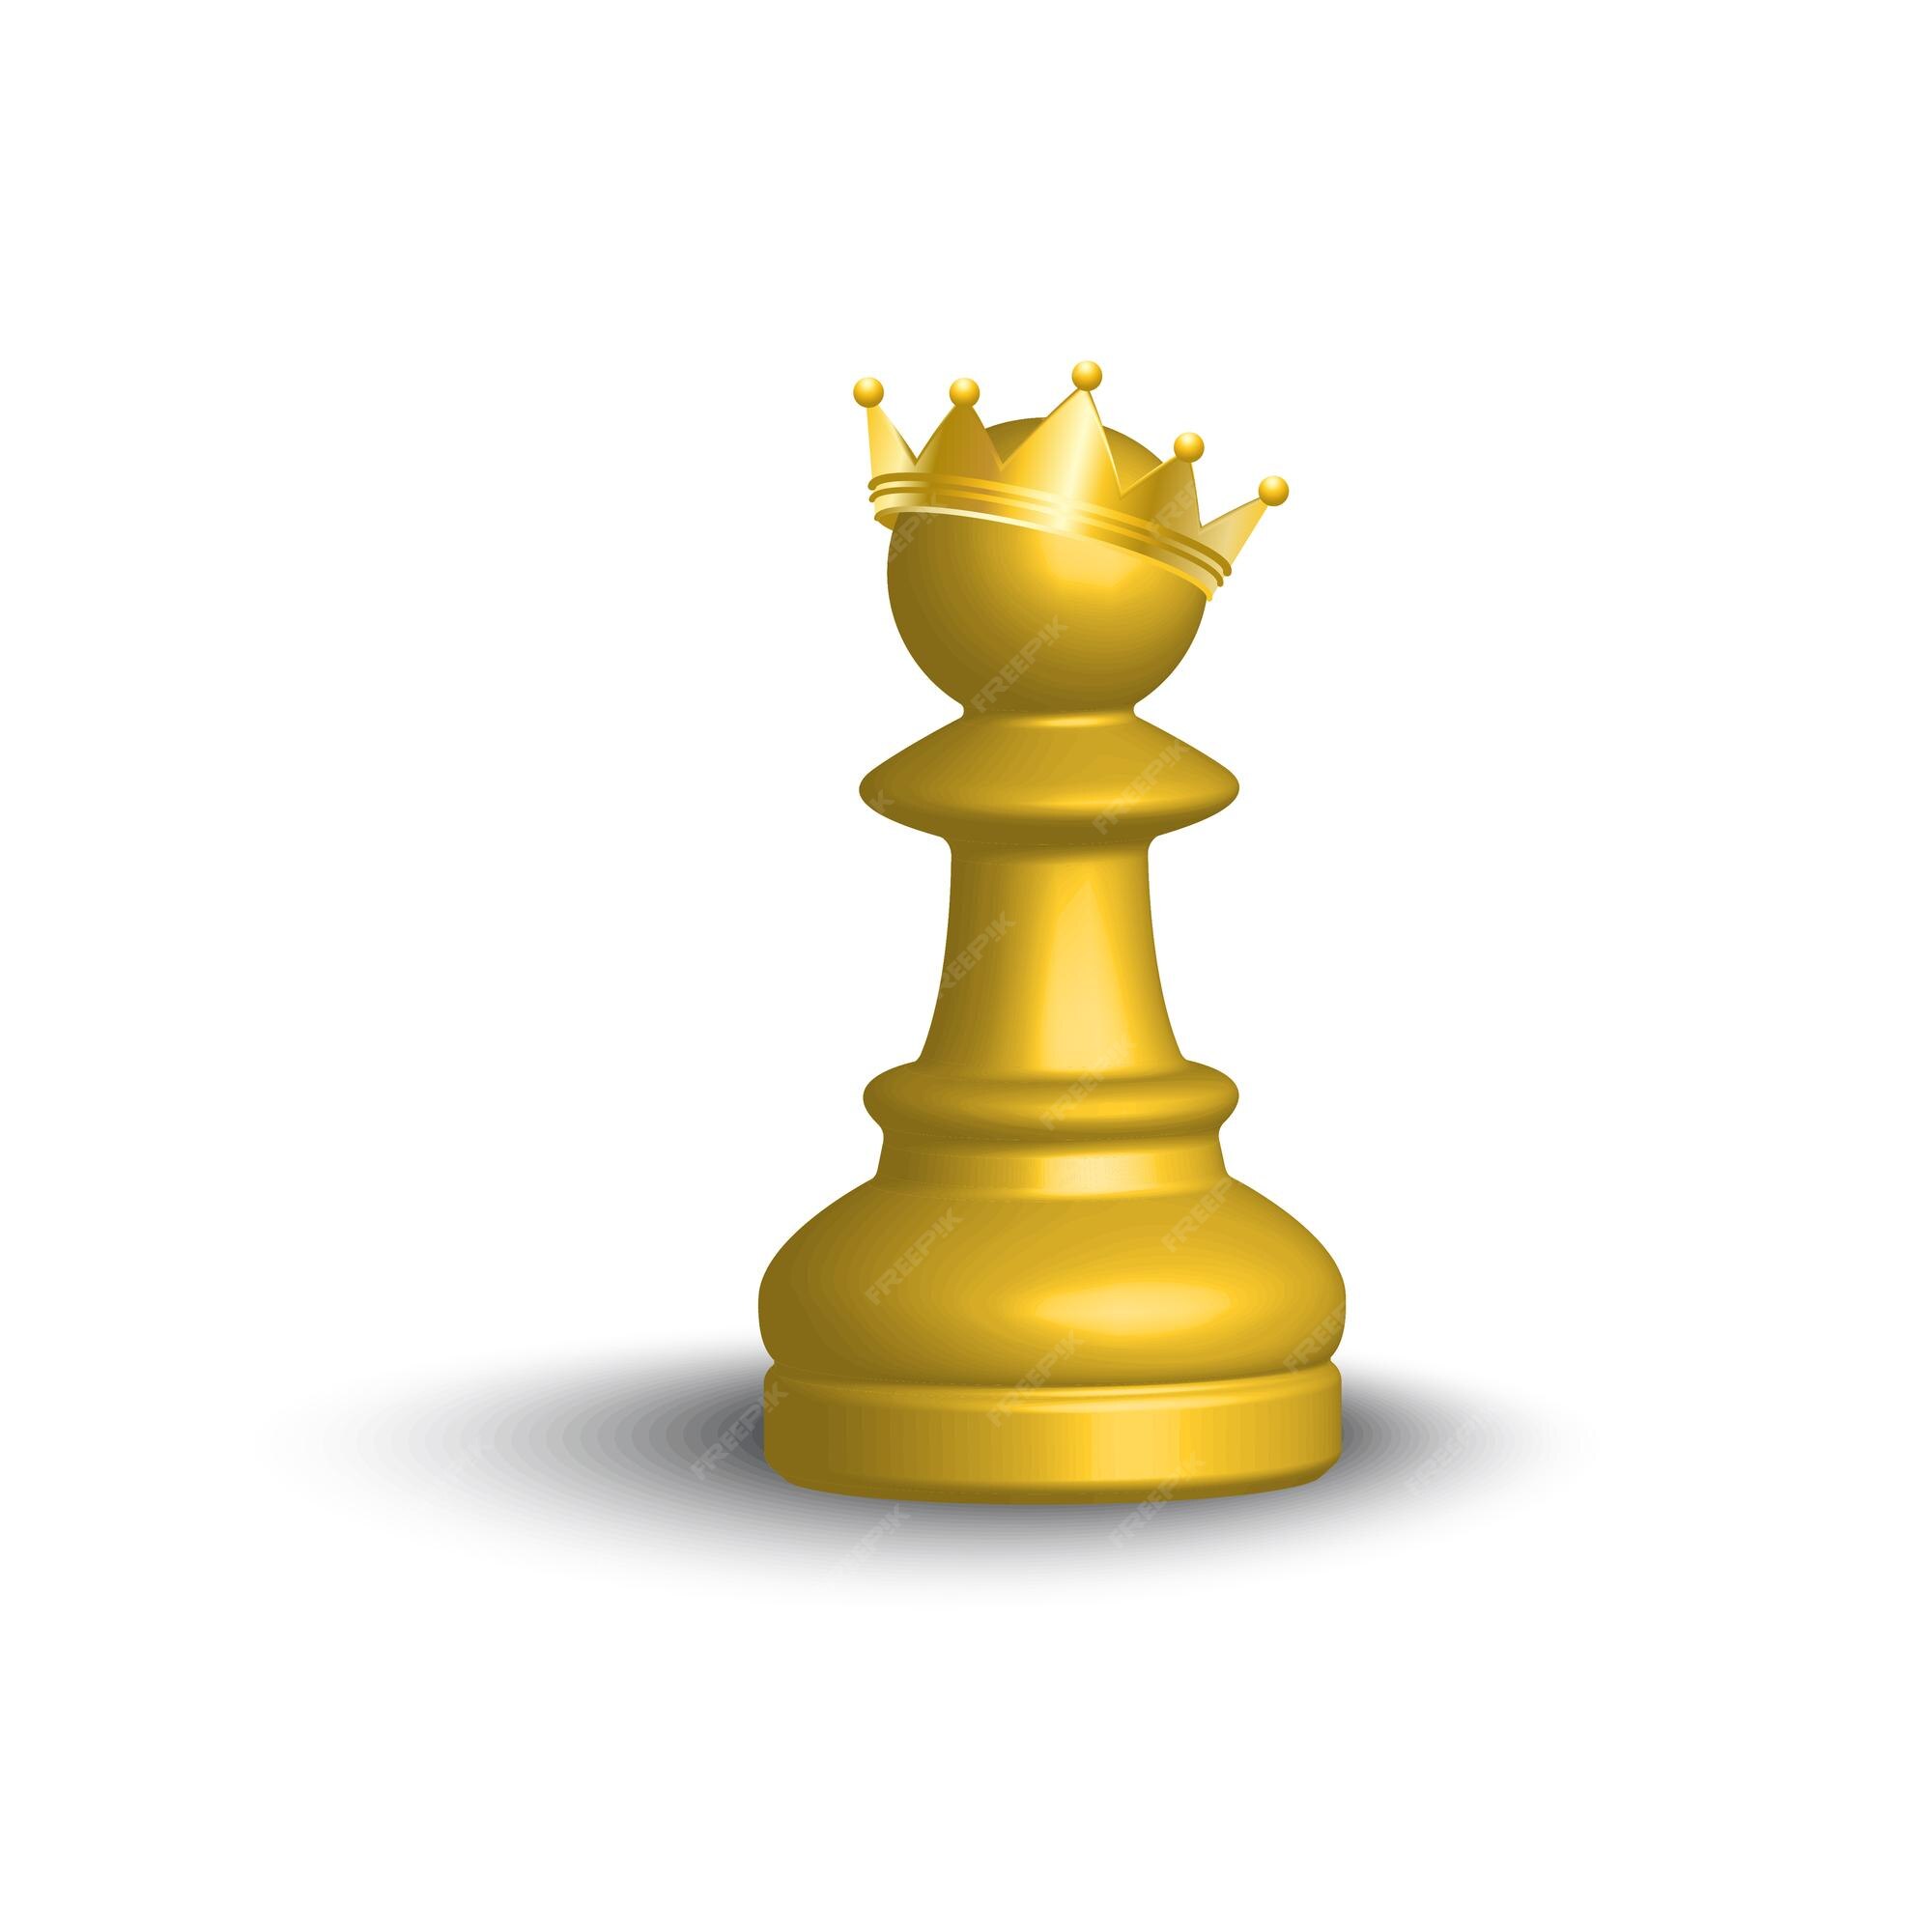 Vetores e ilustrações de Peao xadrez 3d para download gratuito